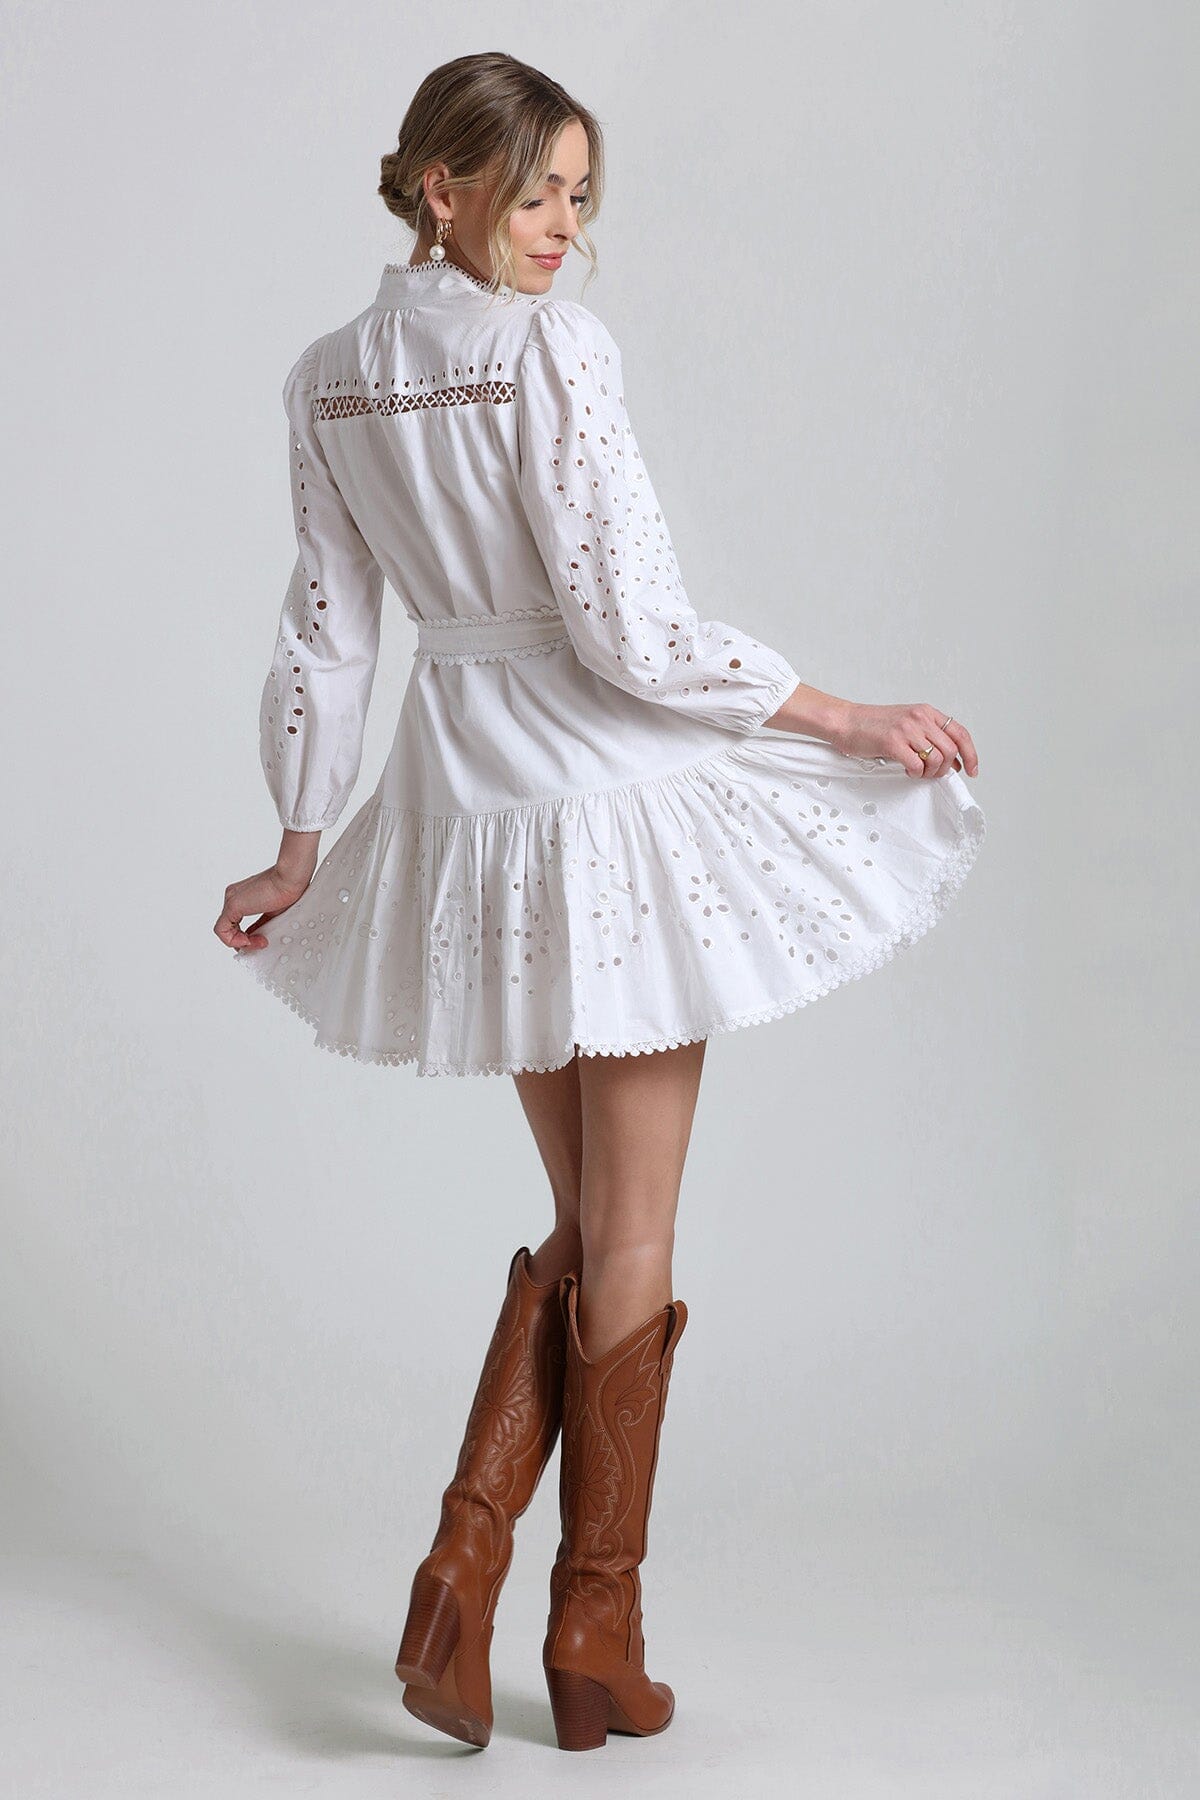 Broderie Anglaise Cotton Shirtdress Dresses Avec Les Filles 